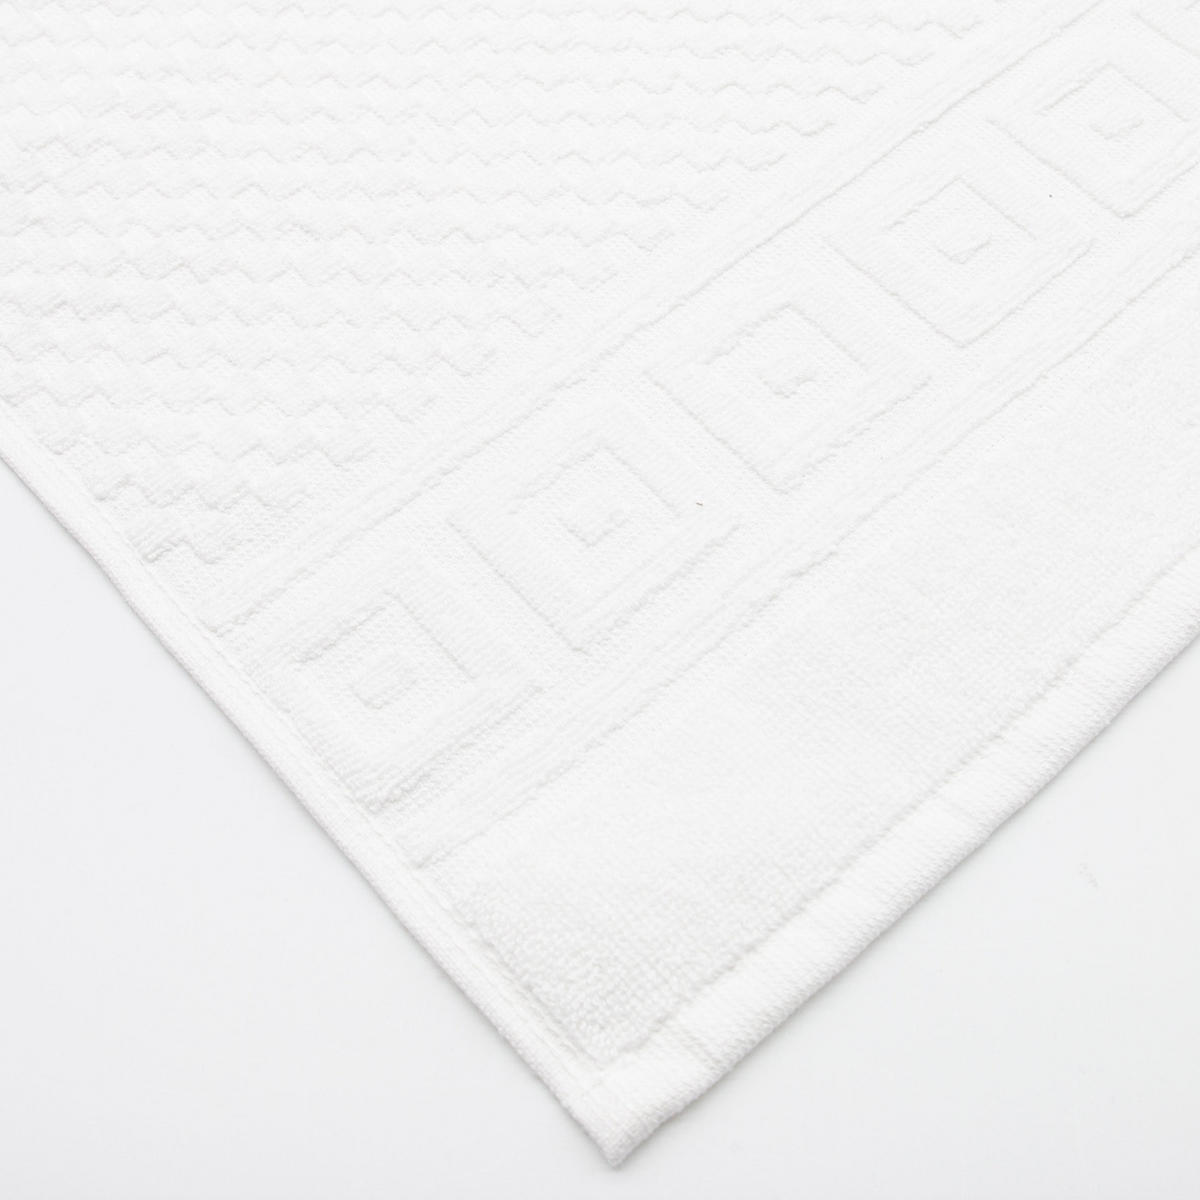 HANDTÜCHER, 6er-Set, 50x70 cm, 100% Baumwolle, Weiß - Weiß, Textil (50/70cm) - Zollner